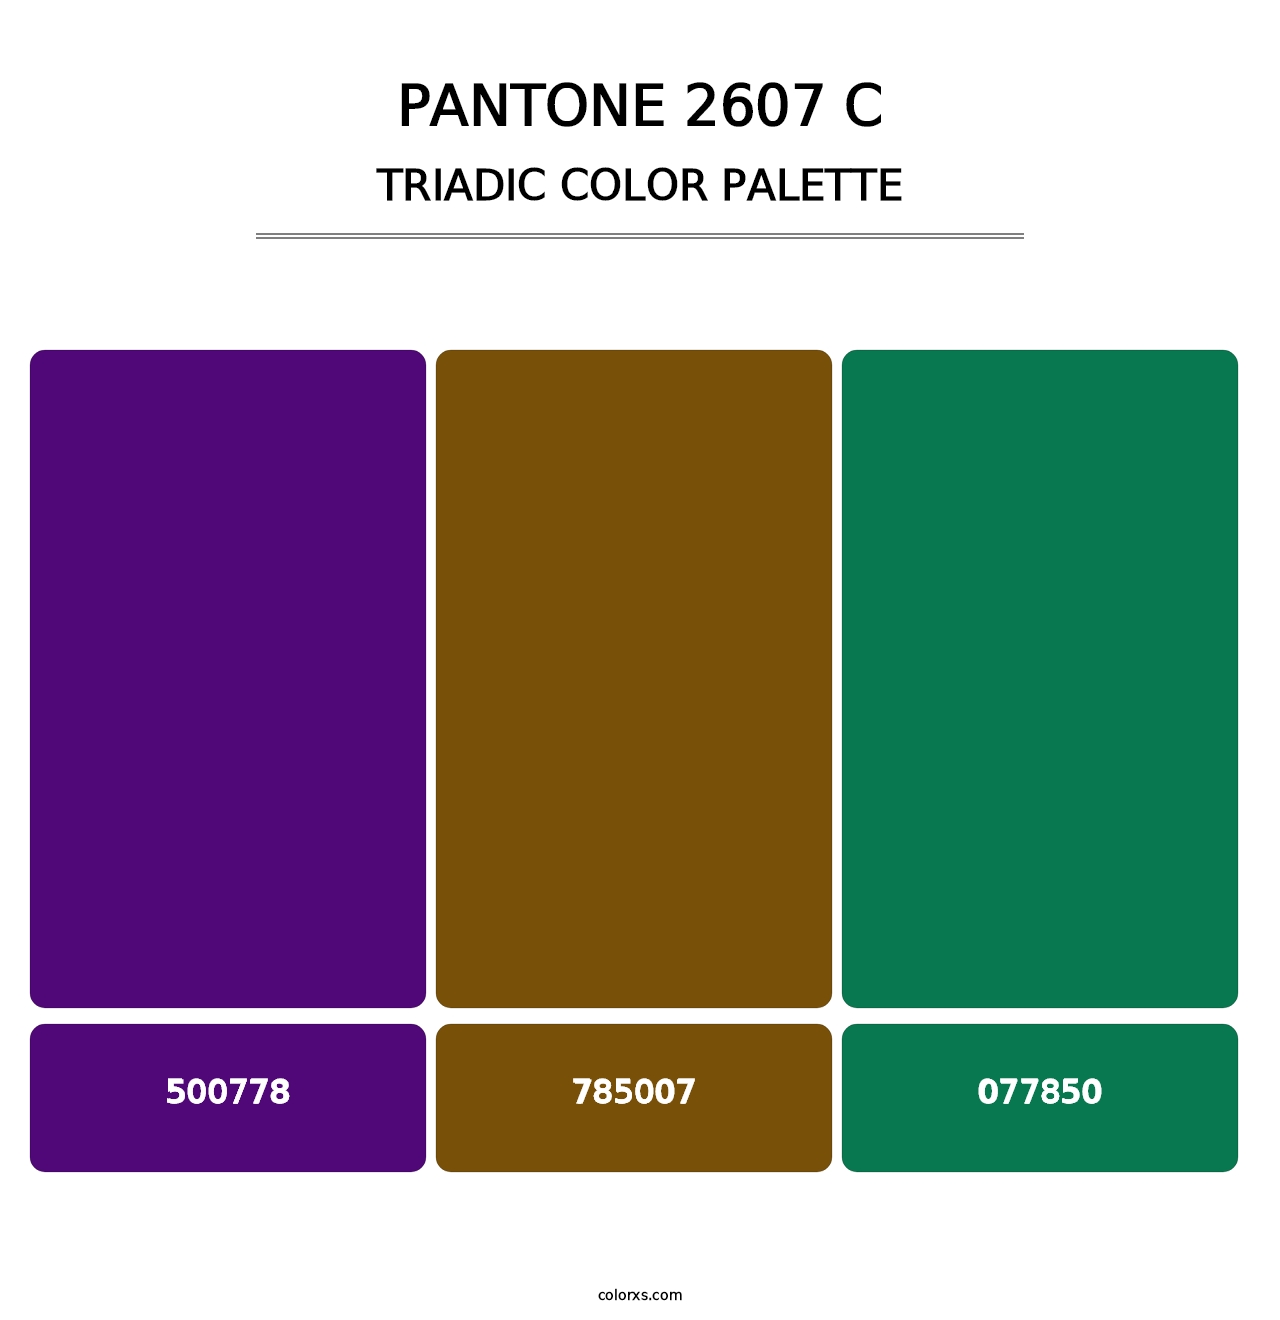 PANTONE 2607 C - Triadic Color Palette